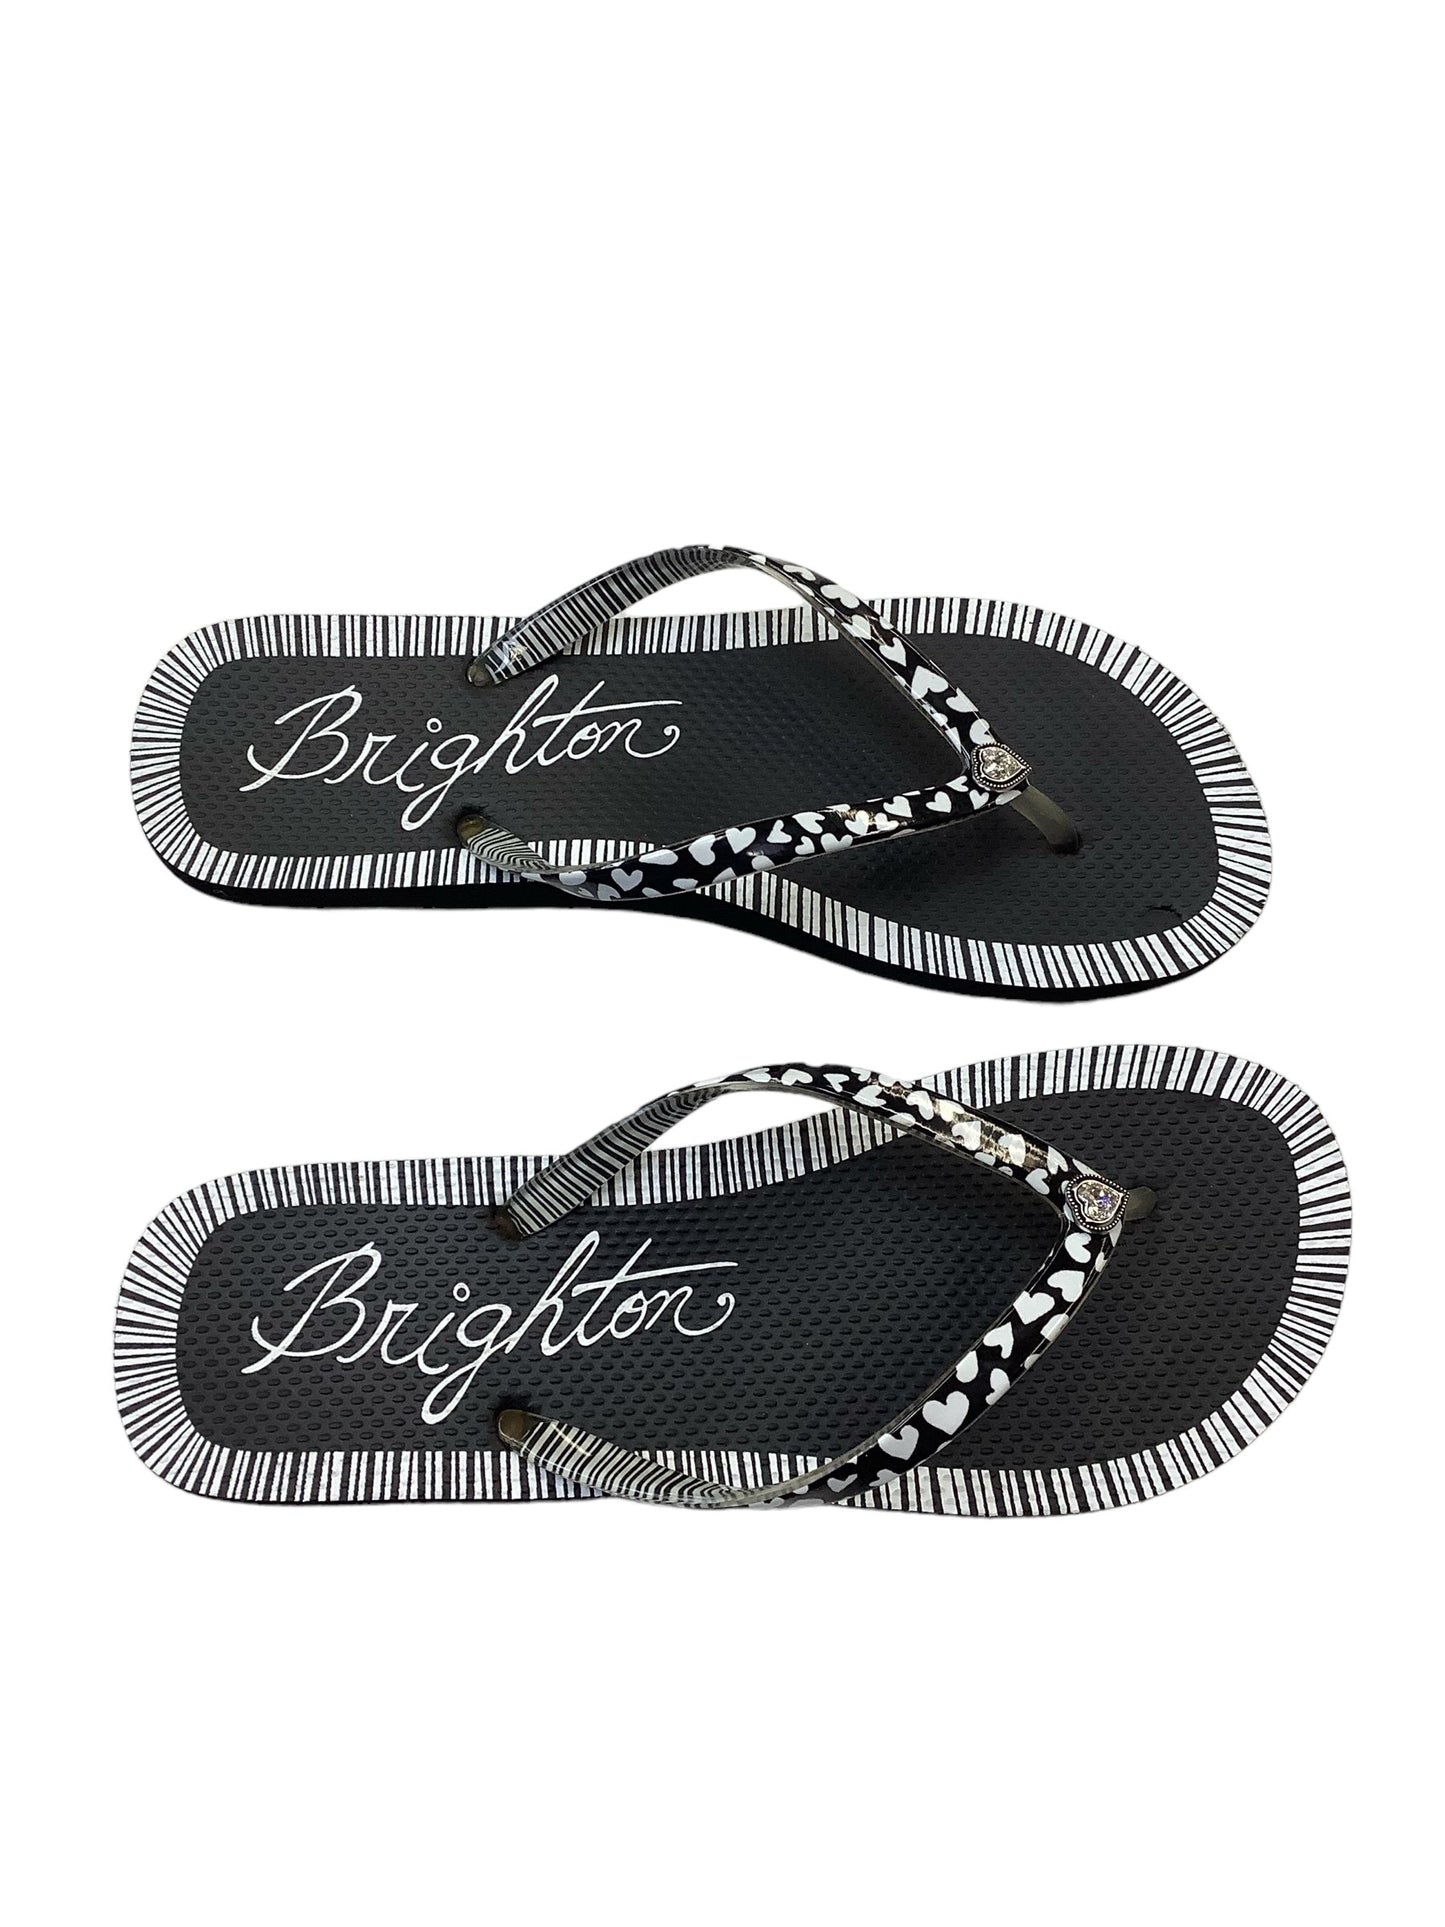 Sandals Flip Flops By Brighton  Size: 9